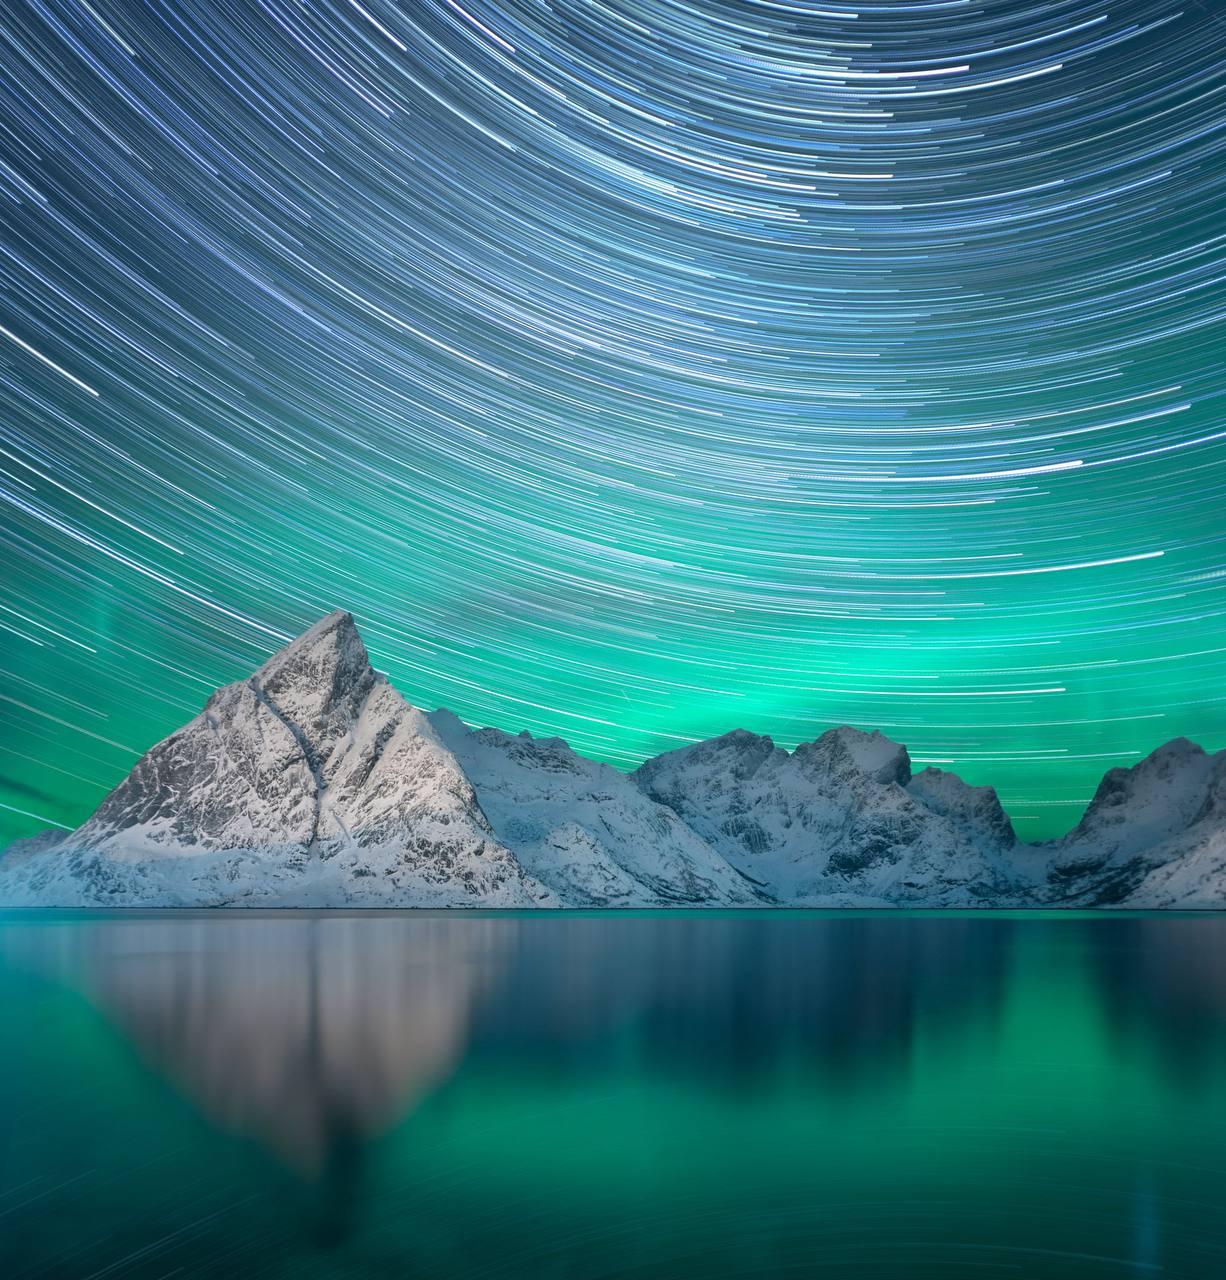 Color Photograph Anna Dobrovolskaya-Mints - Lights norvégiennes : Photo carrée colorée avec traînées d'étoiles